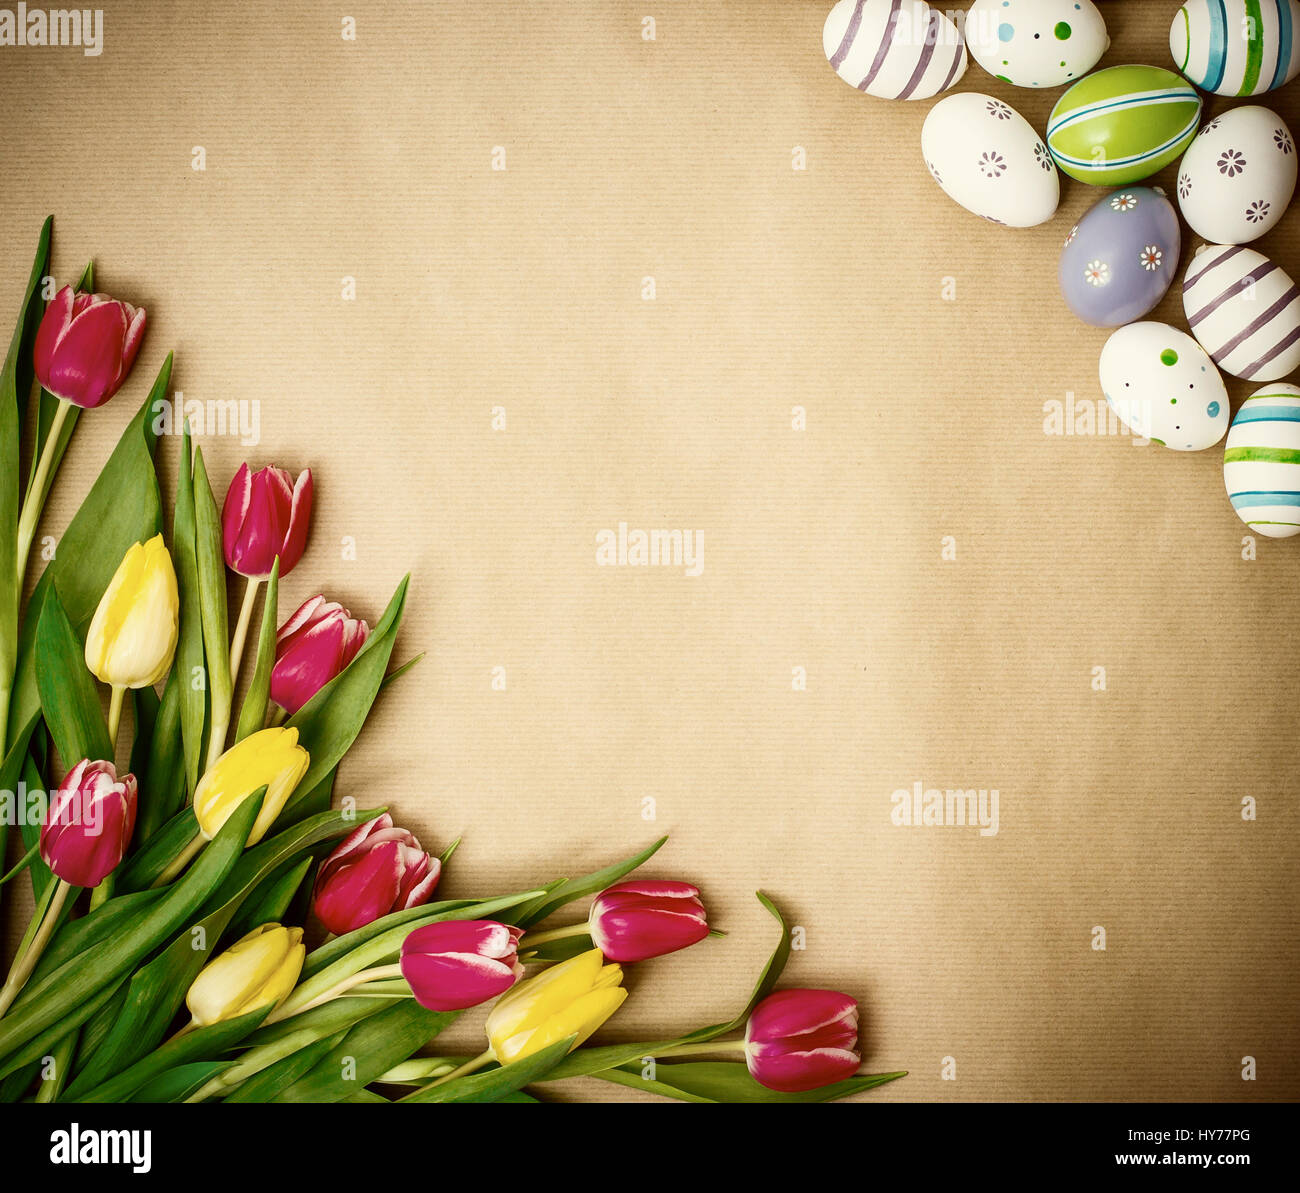 Uovo orientale, tulipani su carta da imballaggio marrone, vista dall'alto Foto Stock